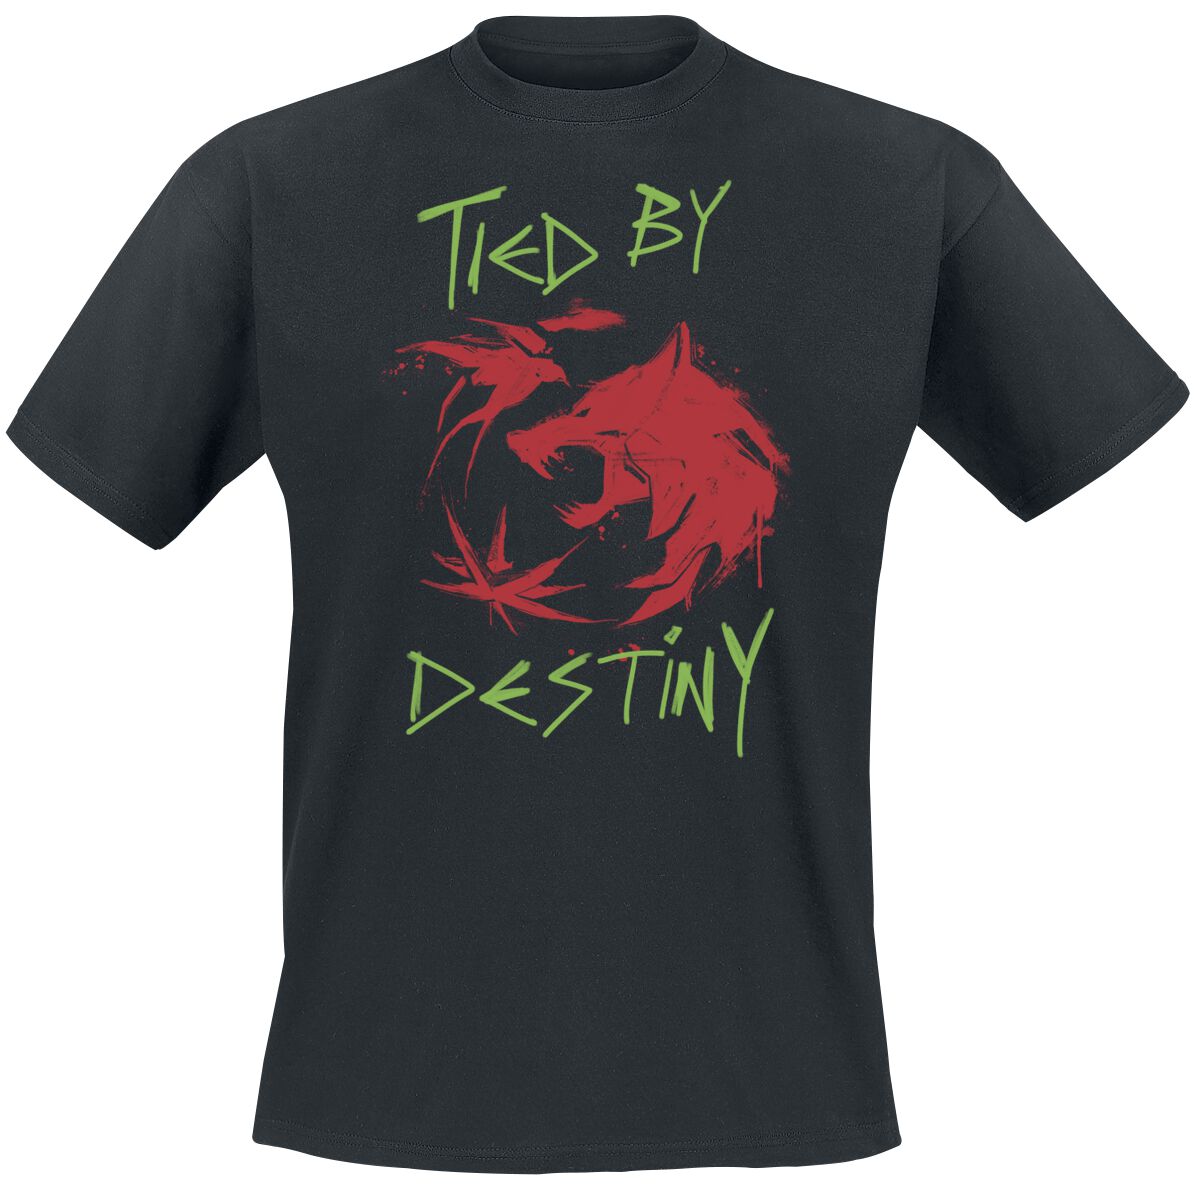 The Witcher T-Shirt - Season 3 - Destiny - S bis XXL - für Männer - Größe M - schwarz  - EMP exklusives Merchandise!